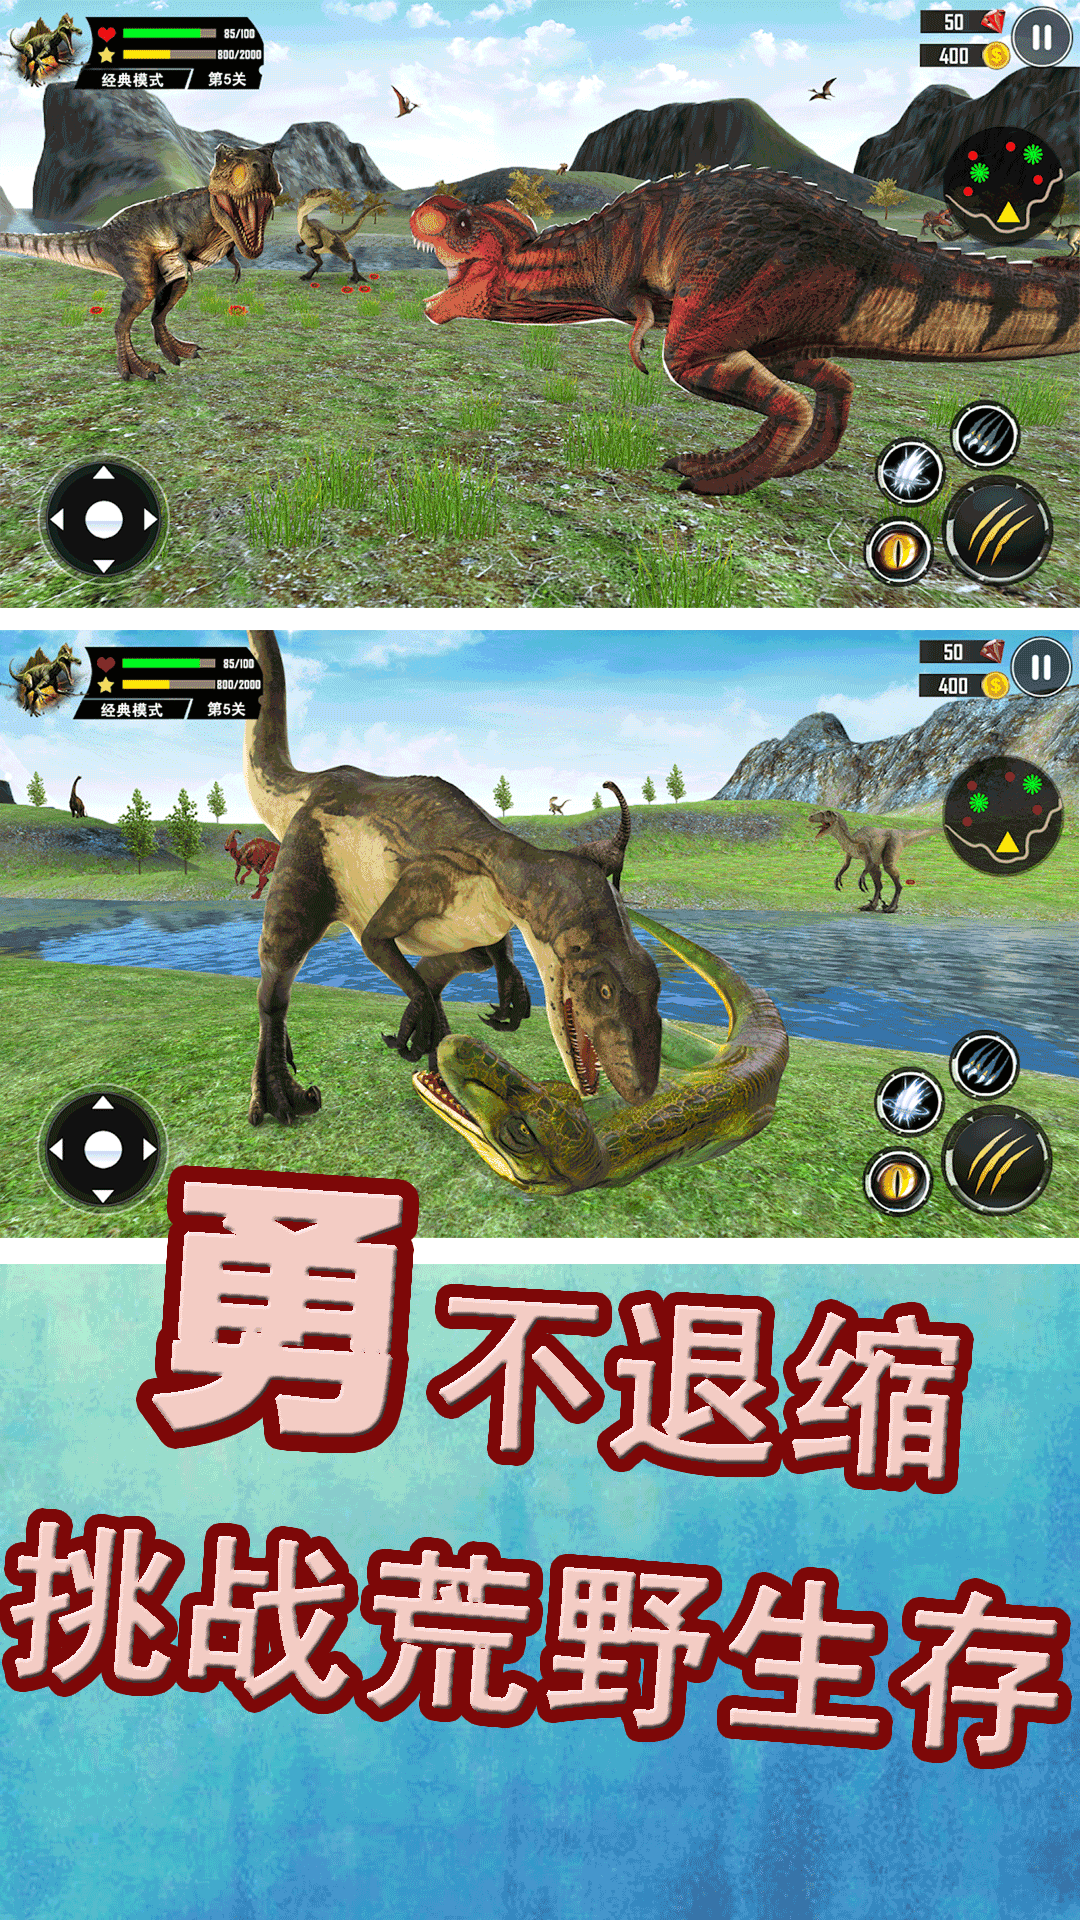 侏罗纪生存战争游戏下载安装图片1